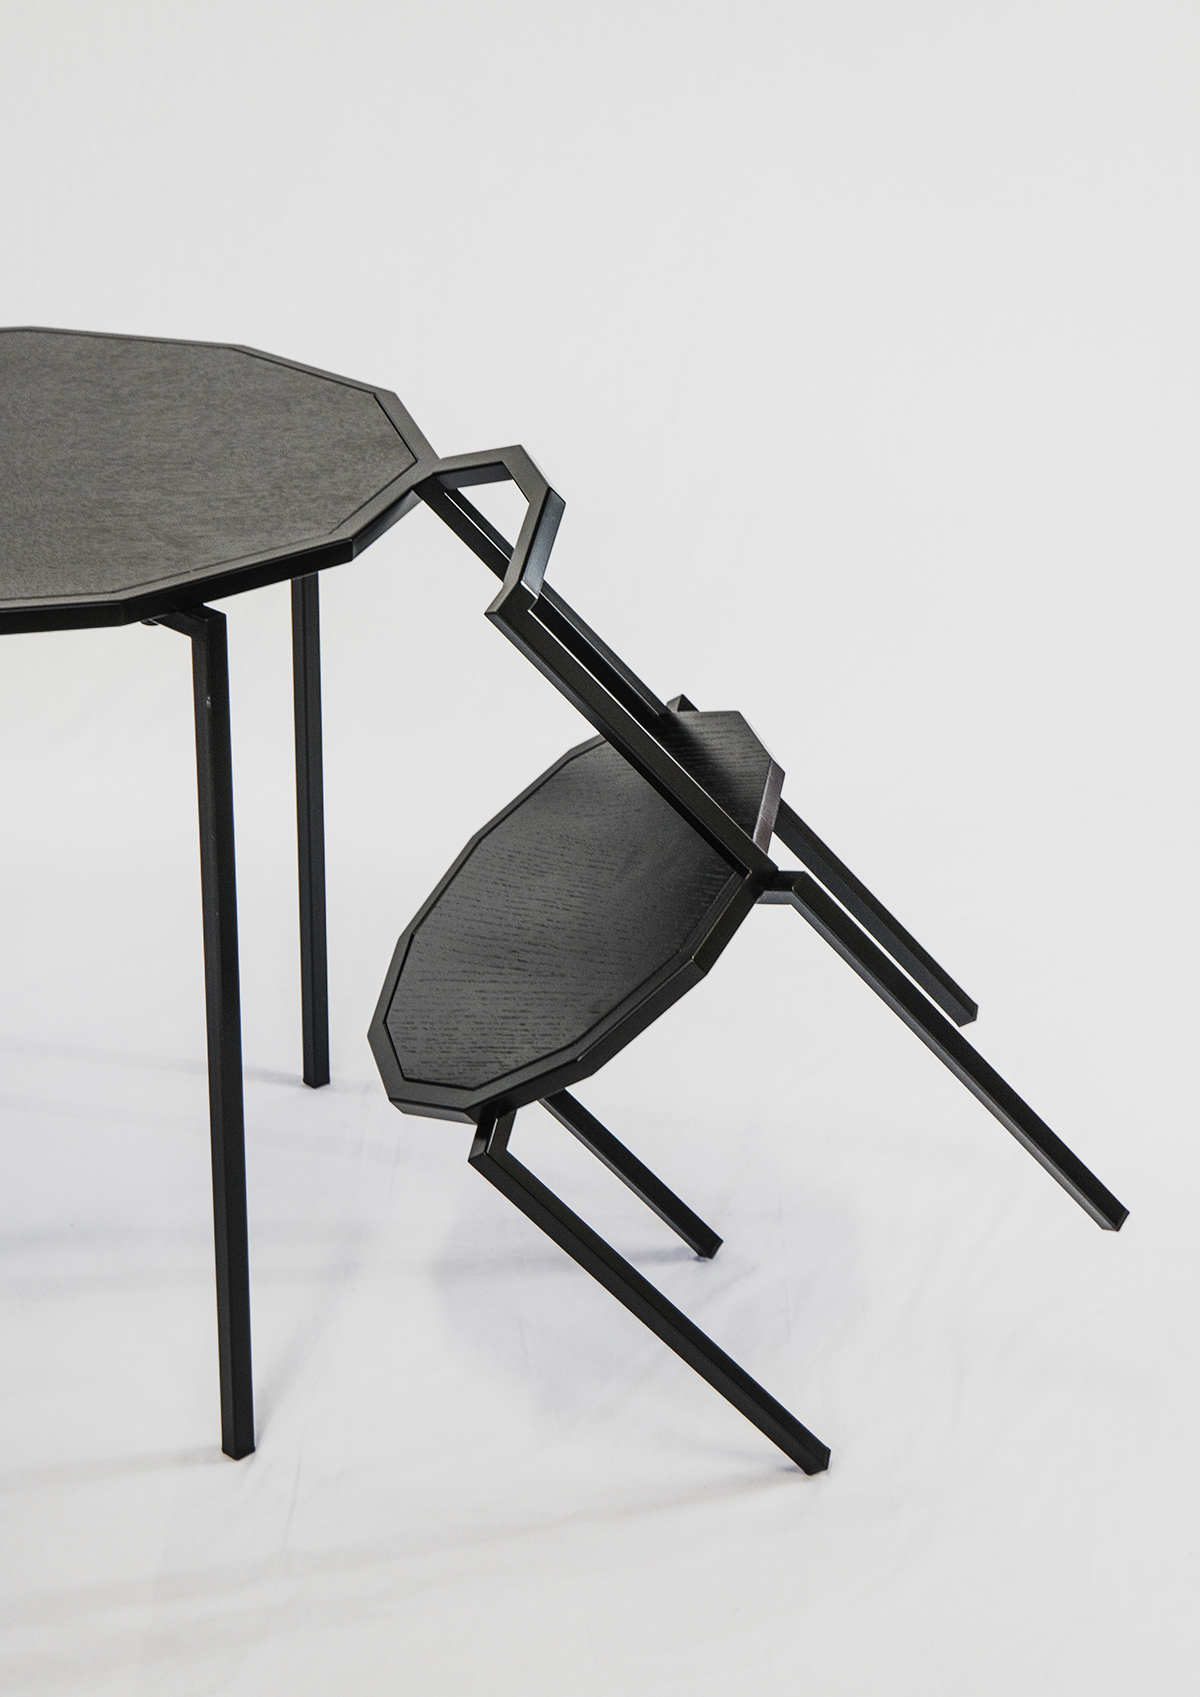 多边形,稳固,桌椅,创意设计,普象